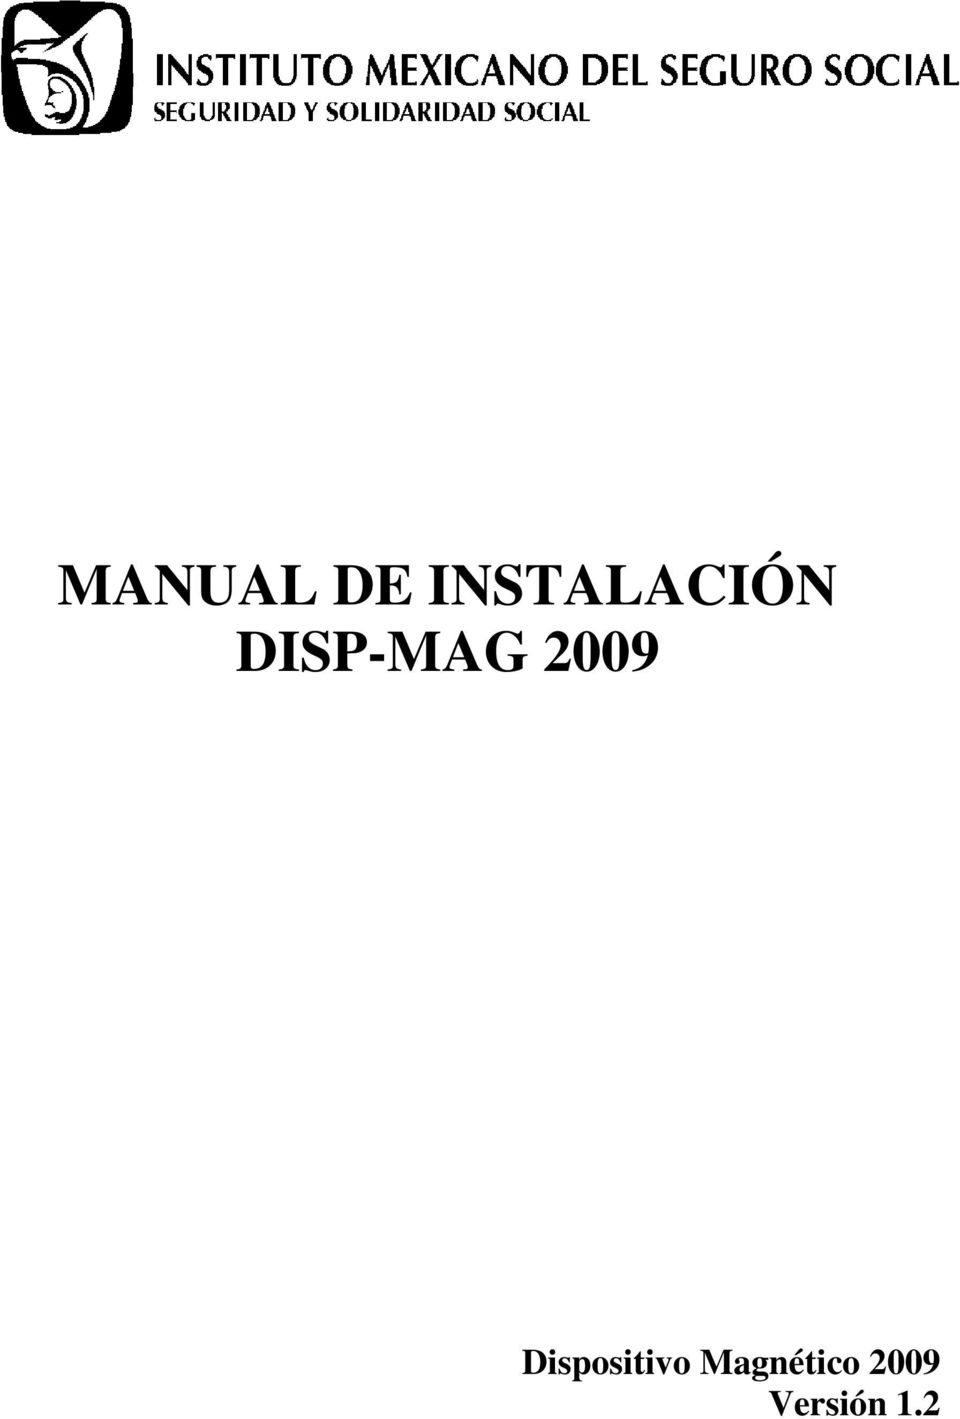 DISP-MAG 2009